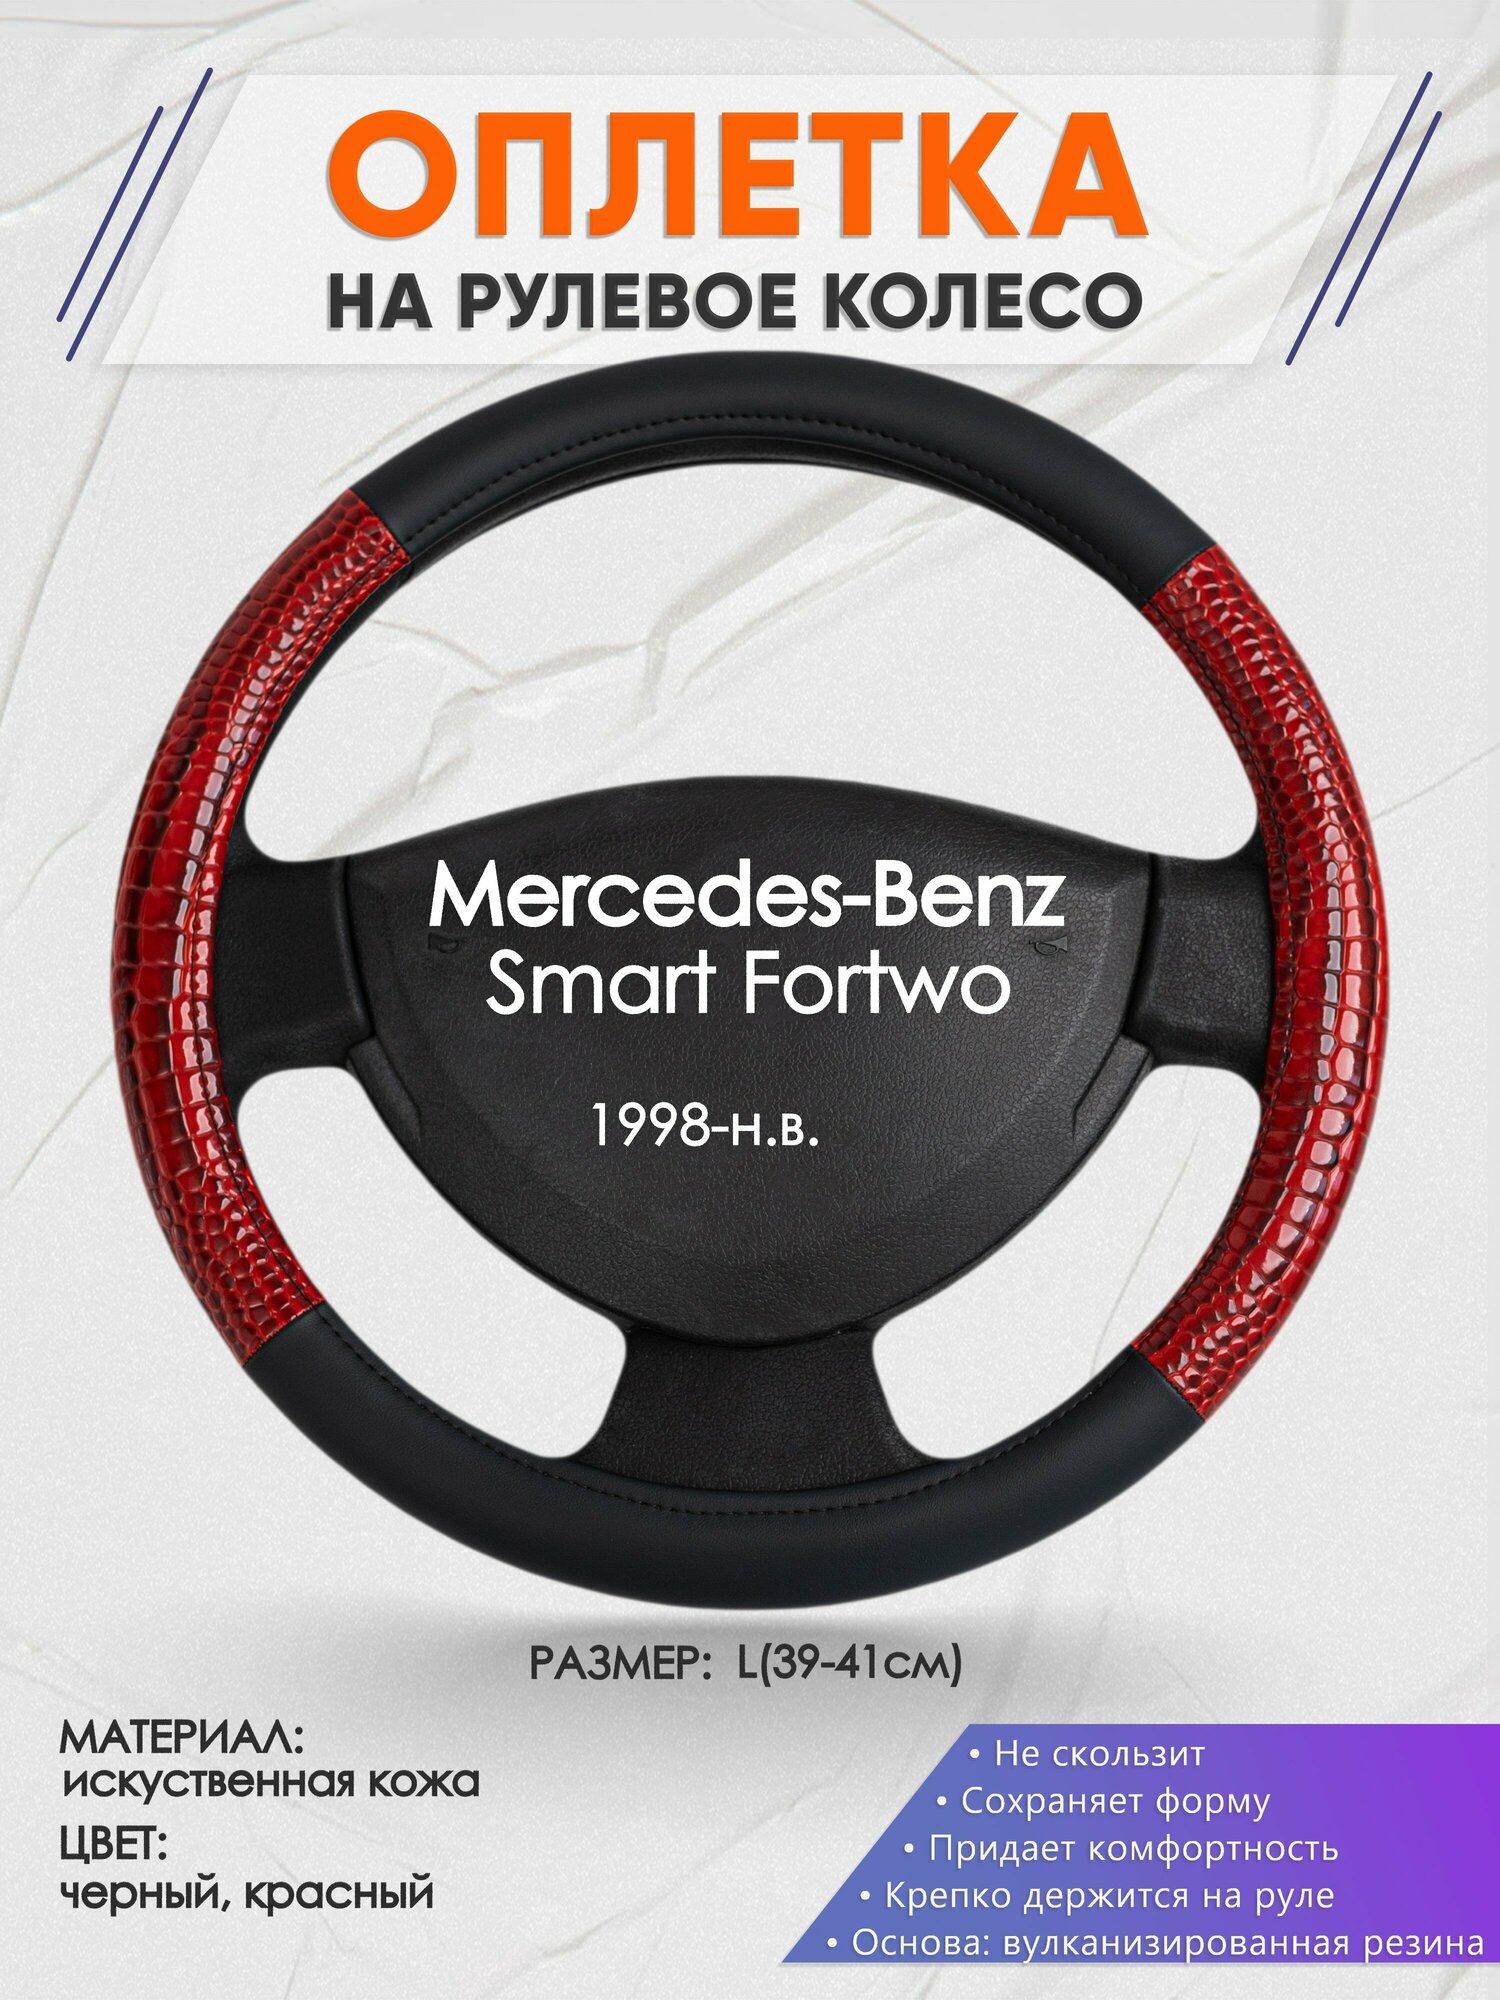 Оплетка на руль для Mercedes-Benz Smart Fortwo(Мерседес Бенц Смарт Форту) 1998-н. в, L(39-41см), Искусственная кожа 16